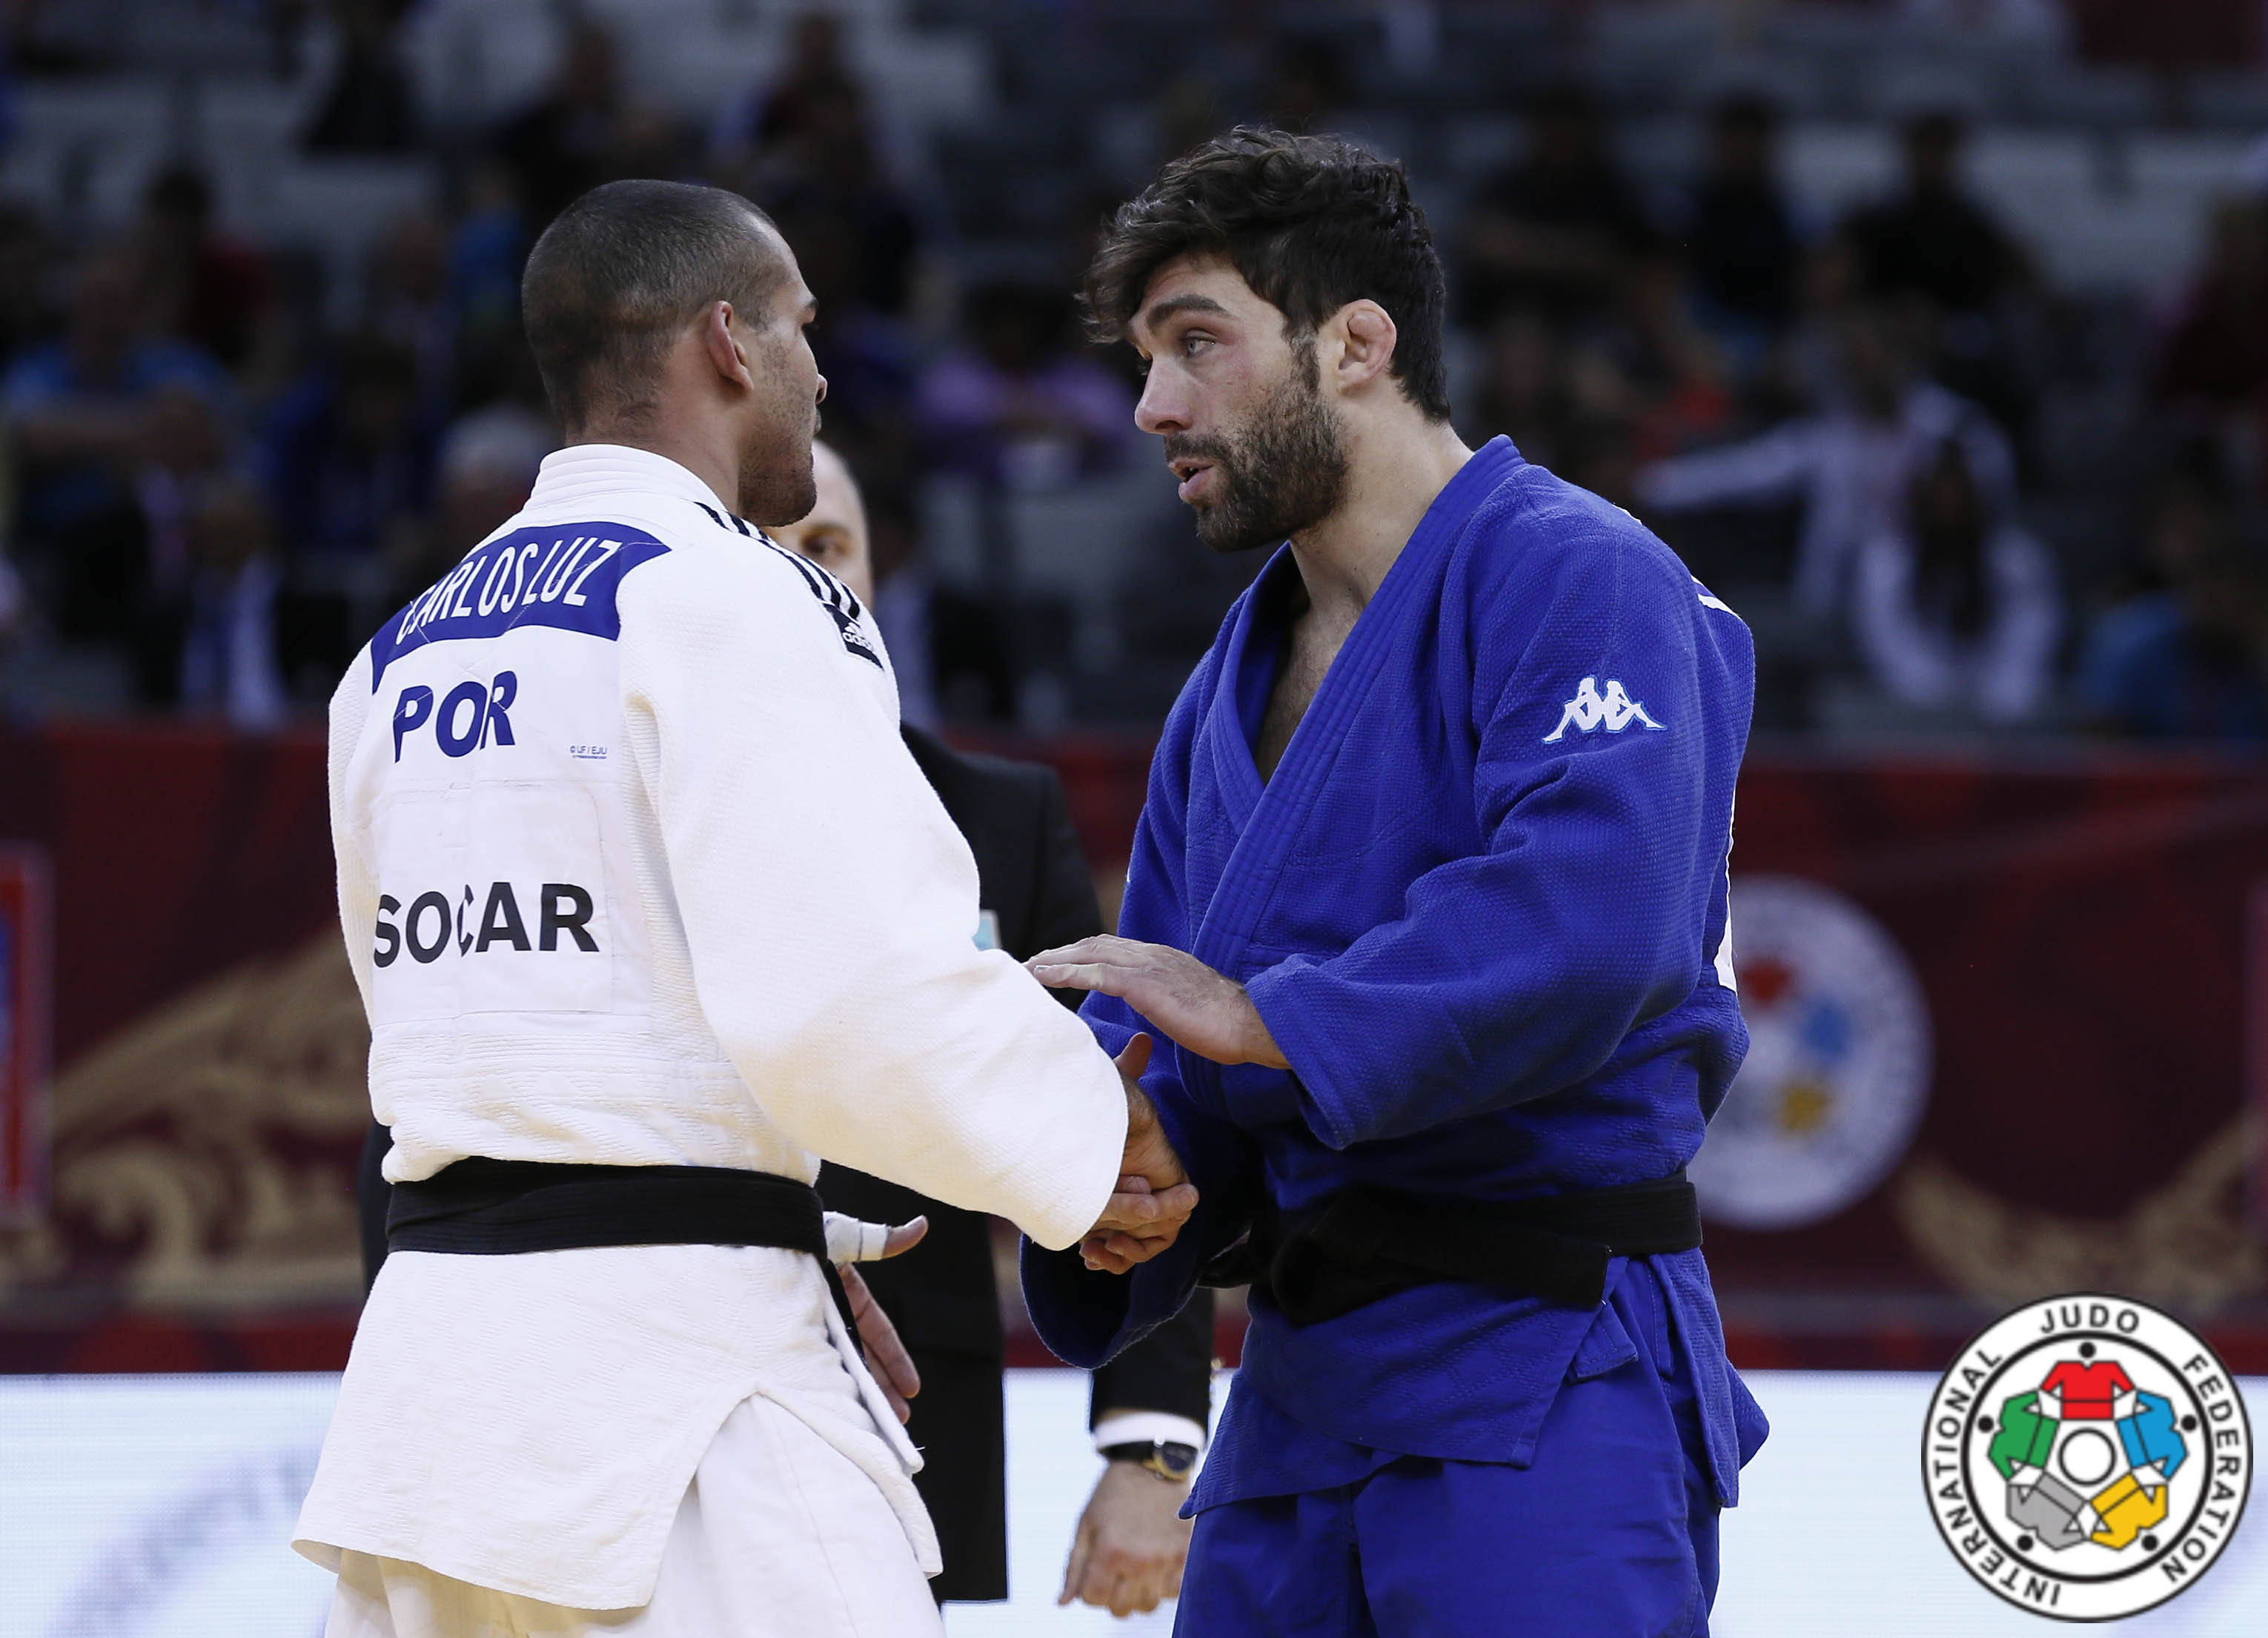 Matteo Marconcini, promosso in quota continentale, è il quinto azzurro per Rio